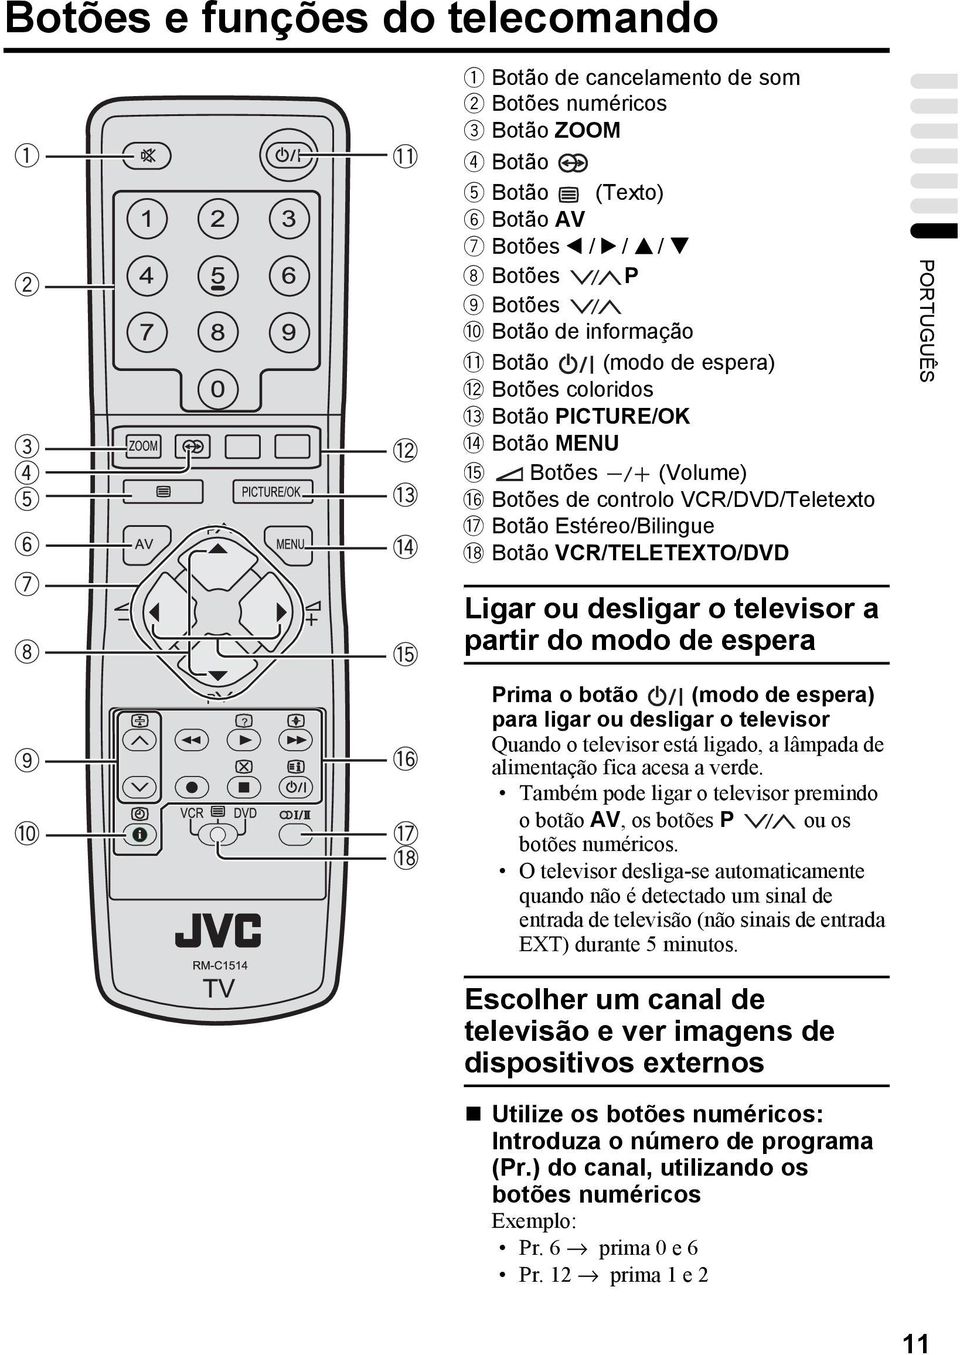 Botão MENU @ Botões (Volume) # Botões de controlo VCR/DVD/Teletexto $ Botão Estéreo/Bilingue % Botão VCR/TELETEXTO/DVD PORTUGUÊS Ligar ou desligar o televisor a partir do modo de espera Prima o botão